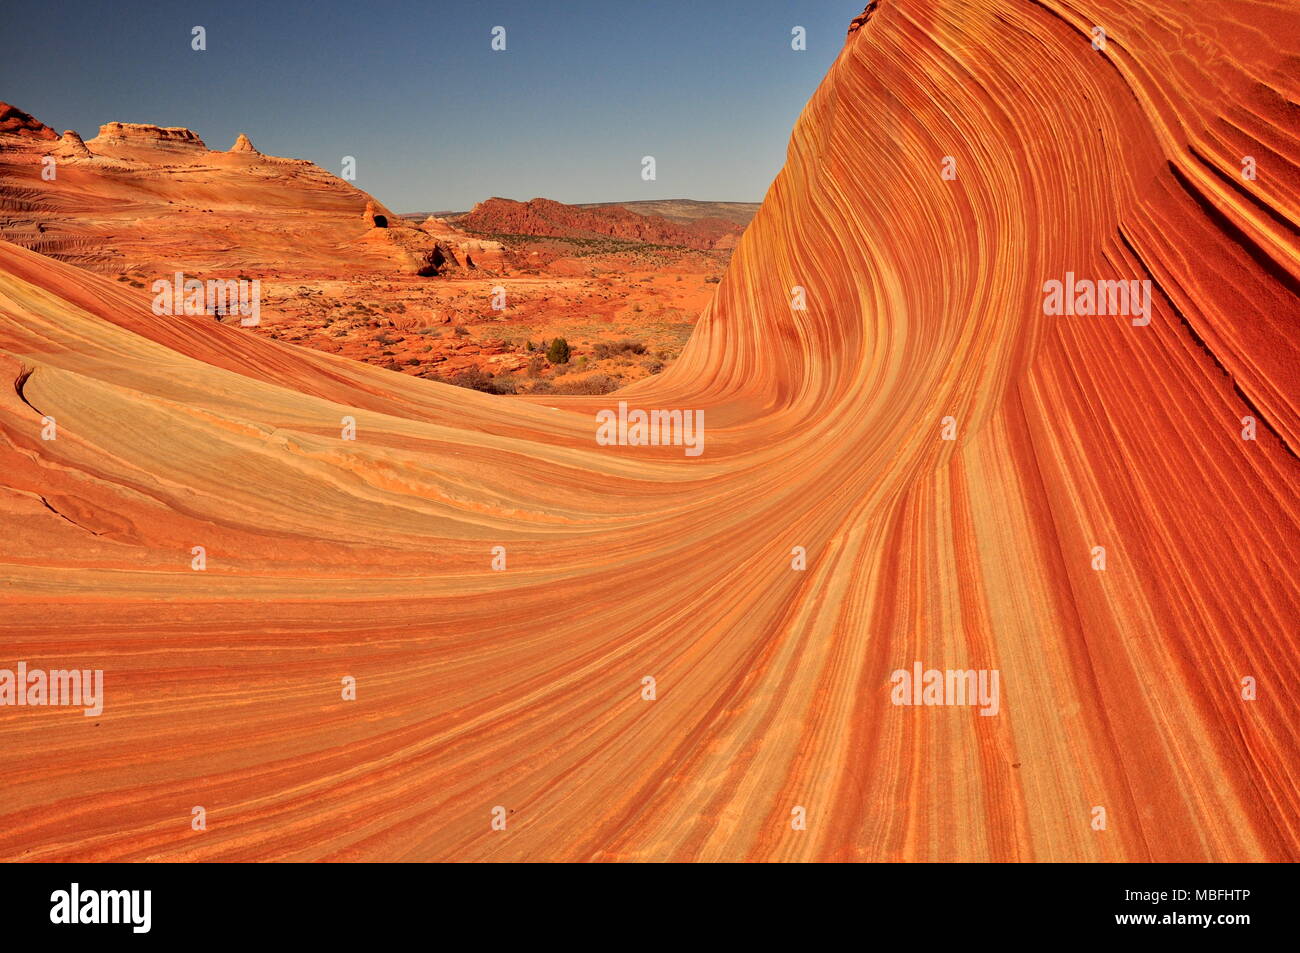 L'Onda, mozzafiato standstone formazione rocciosa profonda nel deserto dell'Arizona, Stati Uniti d'America Foto Stock